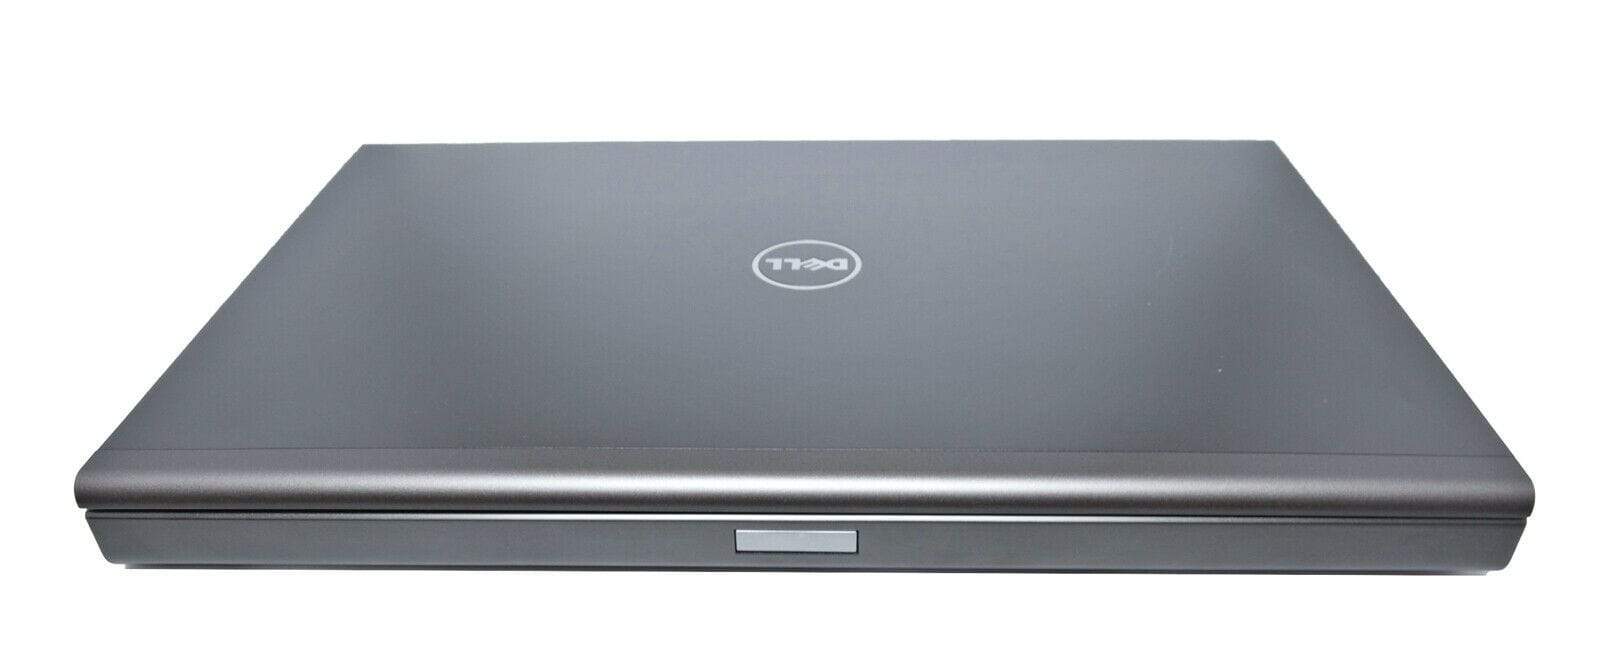 Dell Precision 17" M6800 CAD Laptop: Core i7, Quadro, 256GB+HDD, VAT, Warranty - CruiseTech